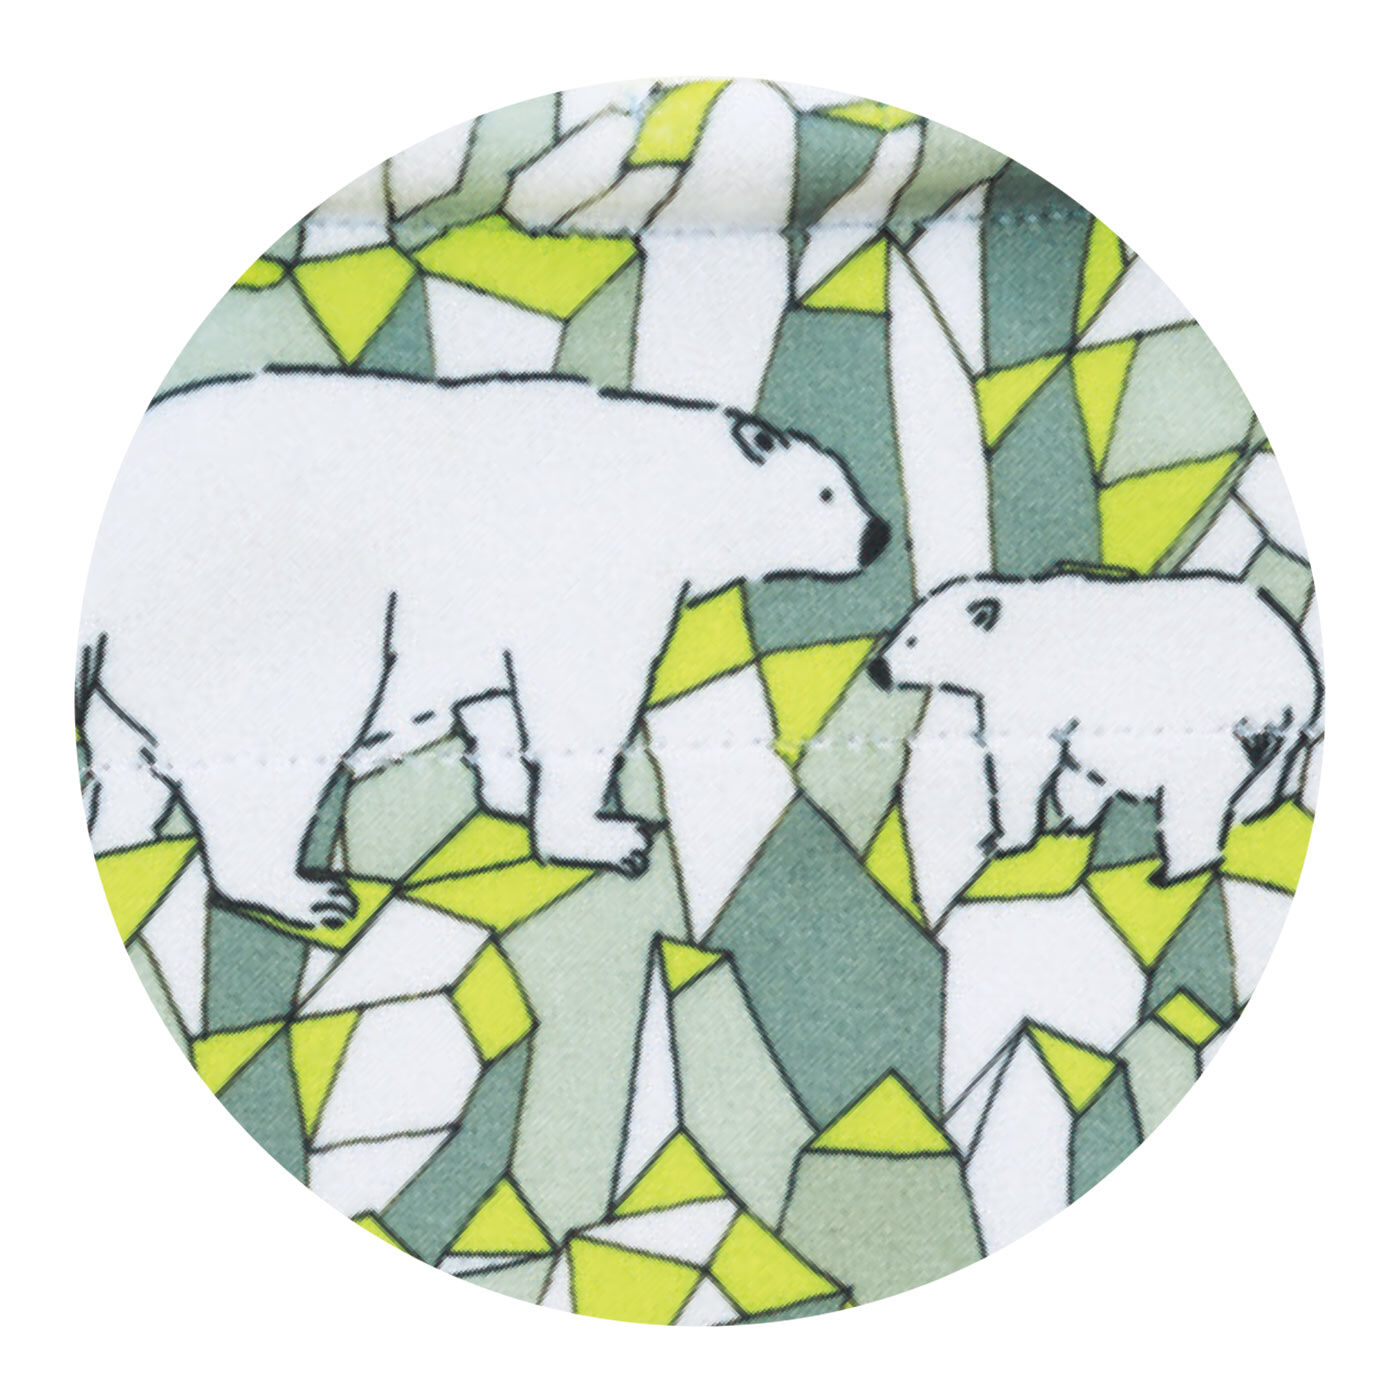 L'AMIPLUS|旭山動物園・ボルネオの森応援商品　ラミプリュス　特殊繊維で結ばずピタッ　持ち手が付いてるひっつクロスの会|ホッキョクグマ×氷山